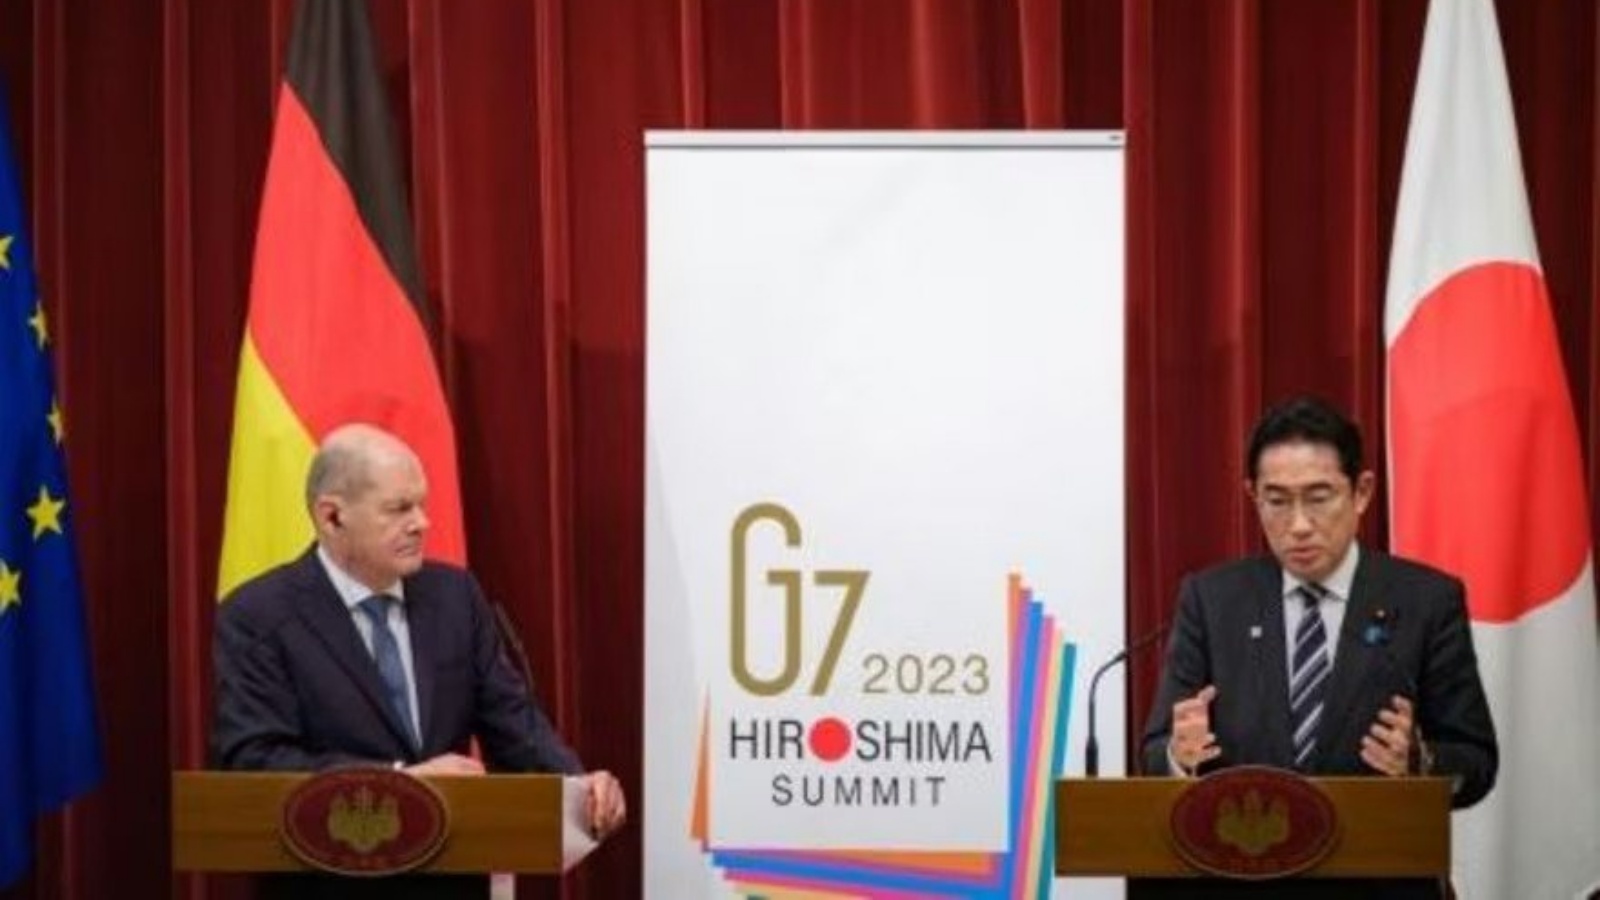 المستشار الألماني أولاف شولتس ورئيس الوزراء الياباني فوميو كيشيدا خلال مؤتمر صحافي في طوكيو في 18 مارس 2023 